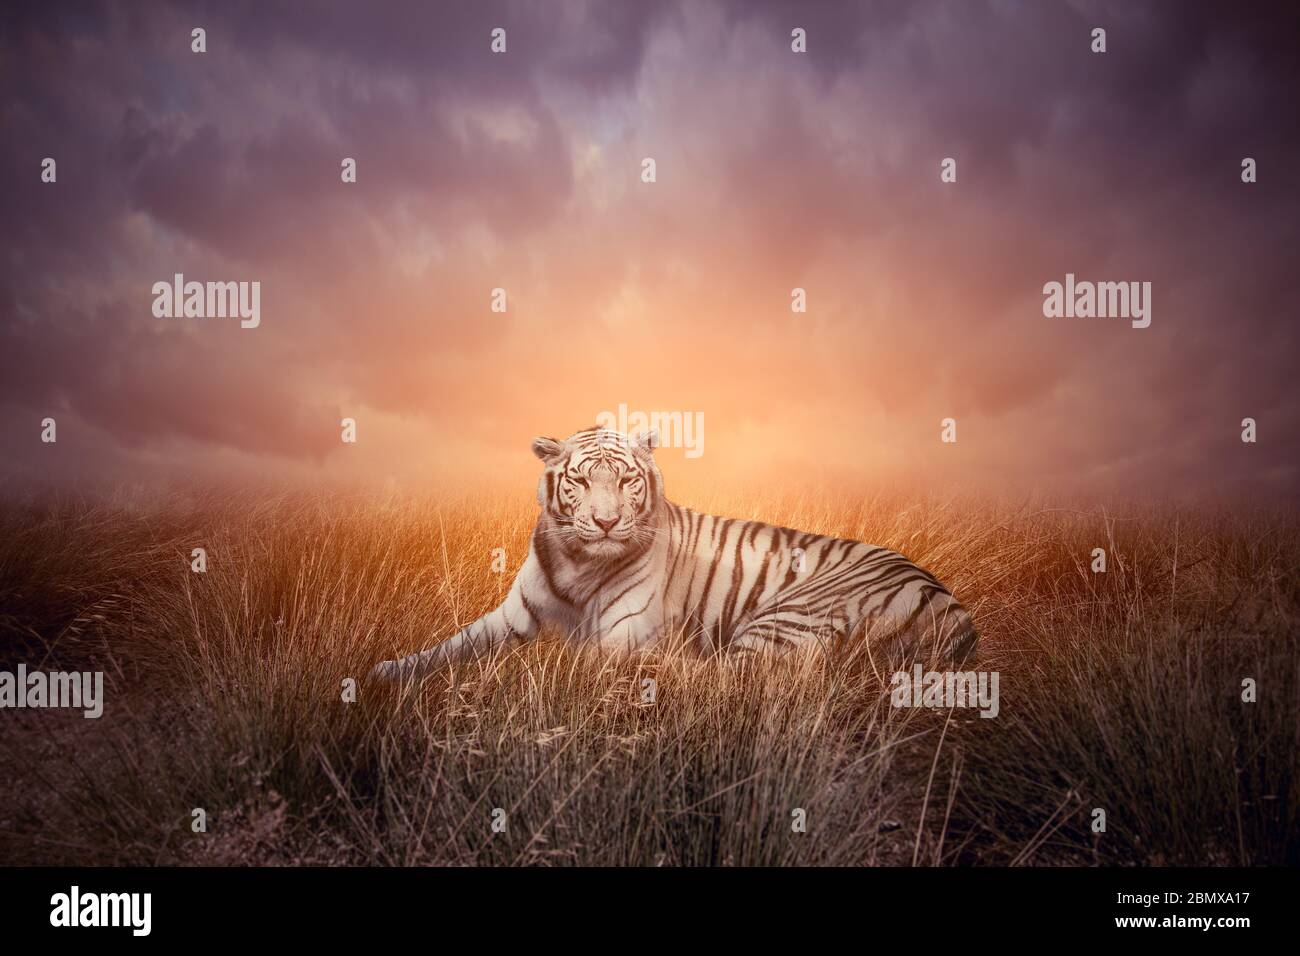 Tiger in grass during sunset. White bengal tiger or Panthera tigris in natural habitat. Stock Photo